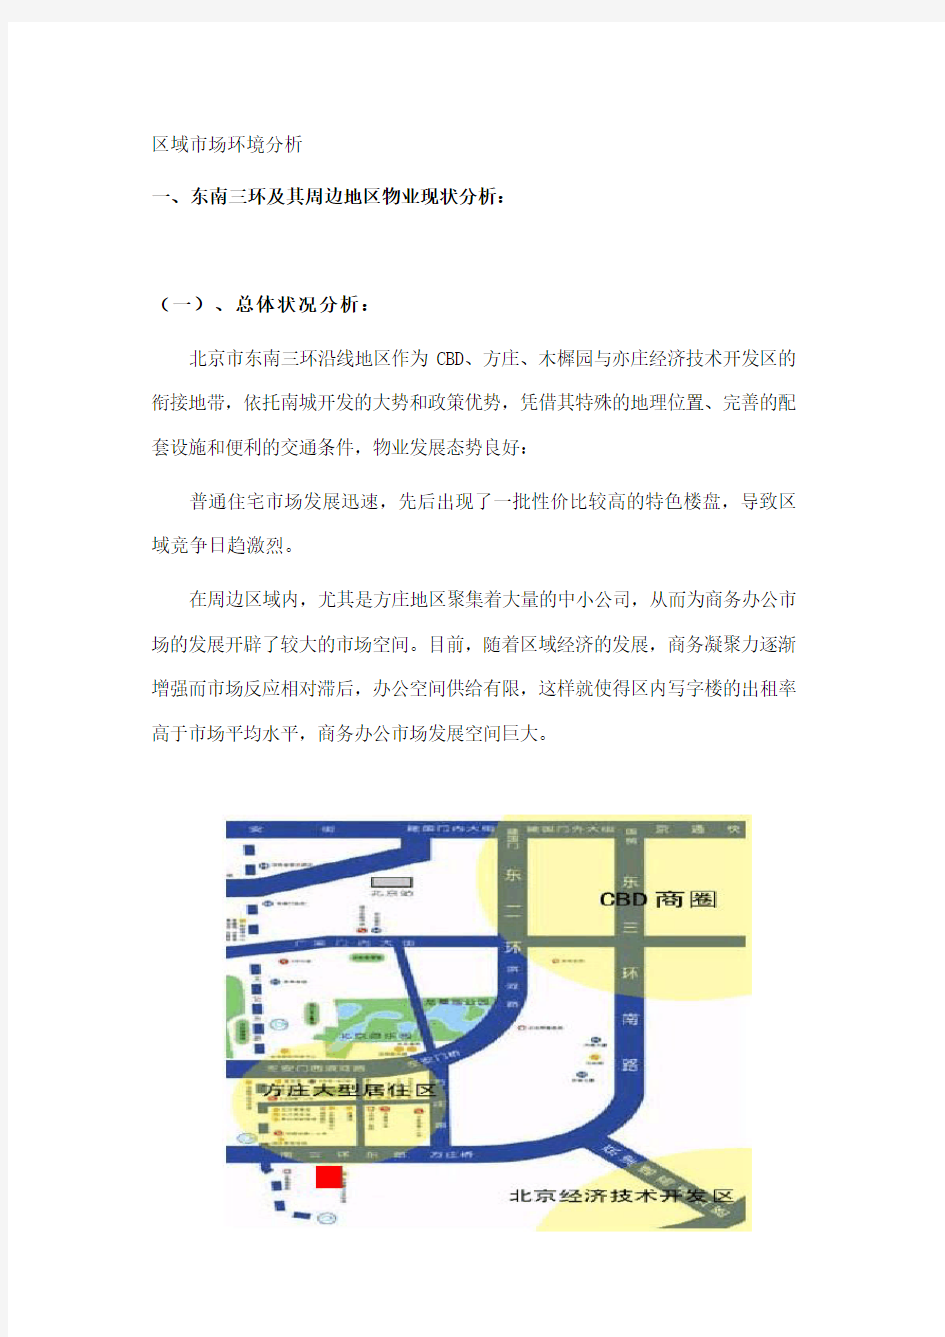 北京市区域房地产市场环境分析